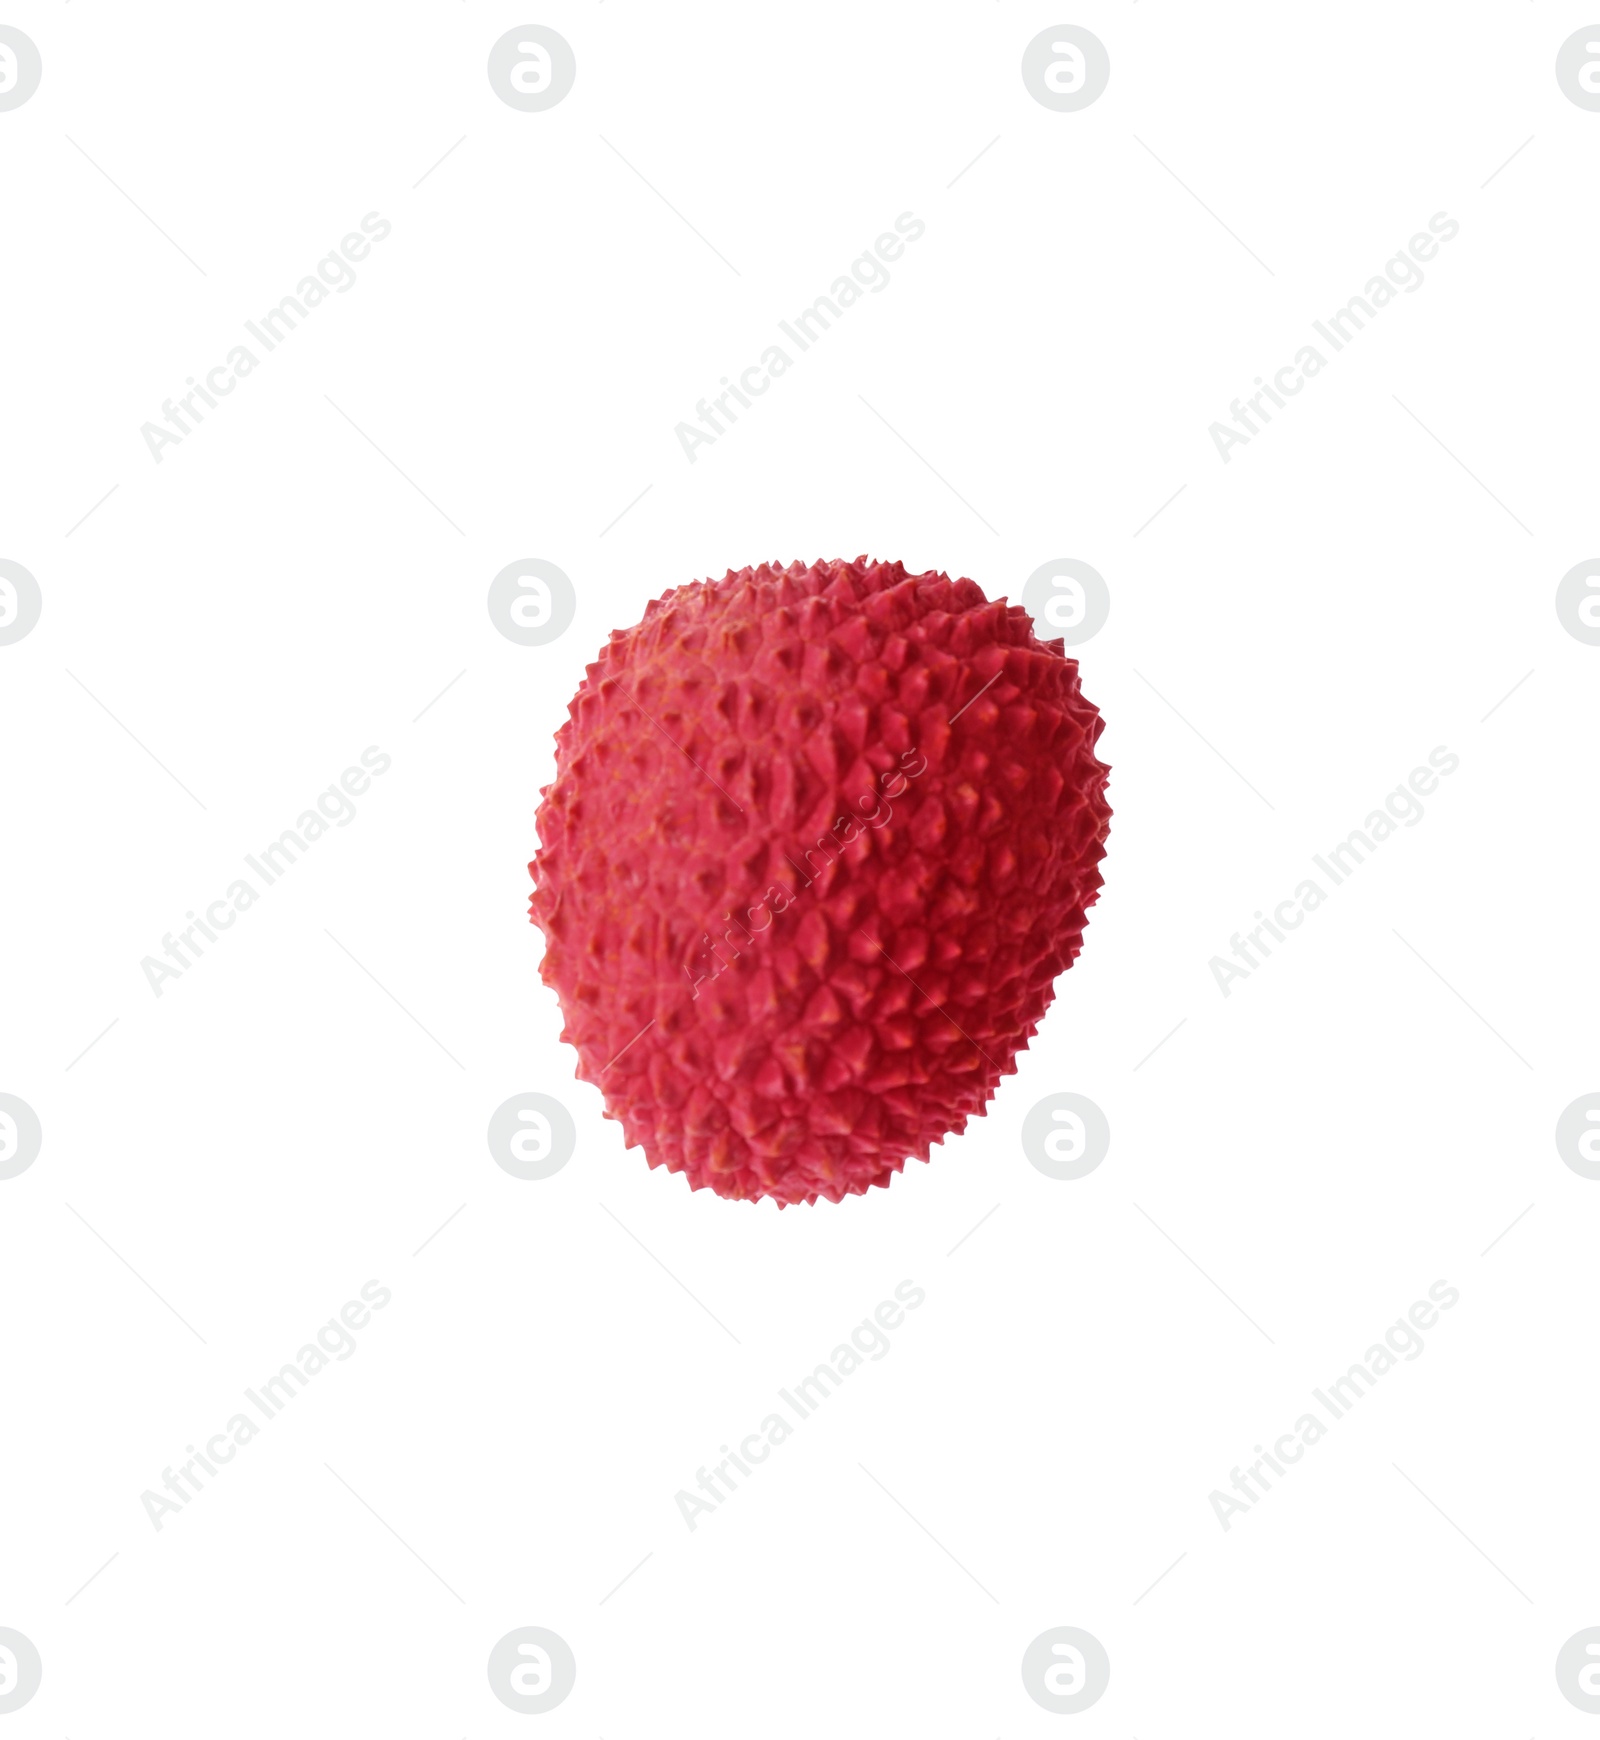 Photo of Whole ripe lychee fruit isolated on white